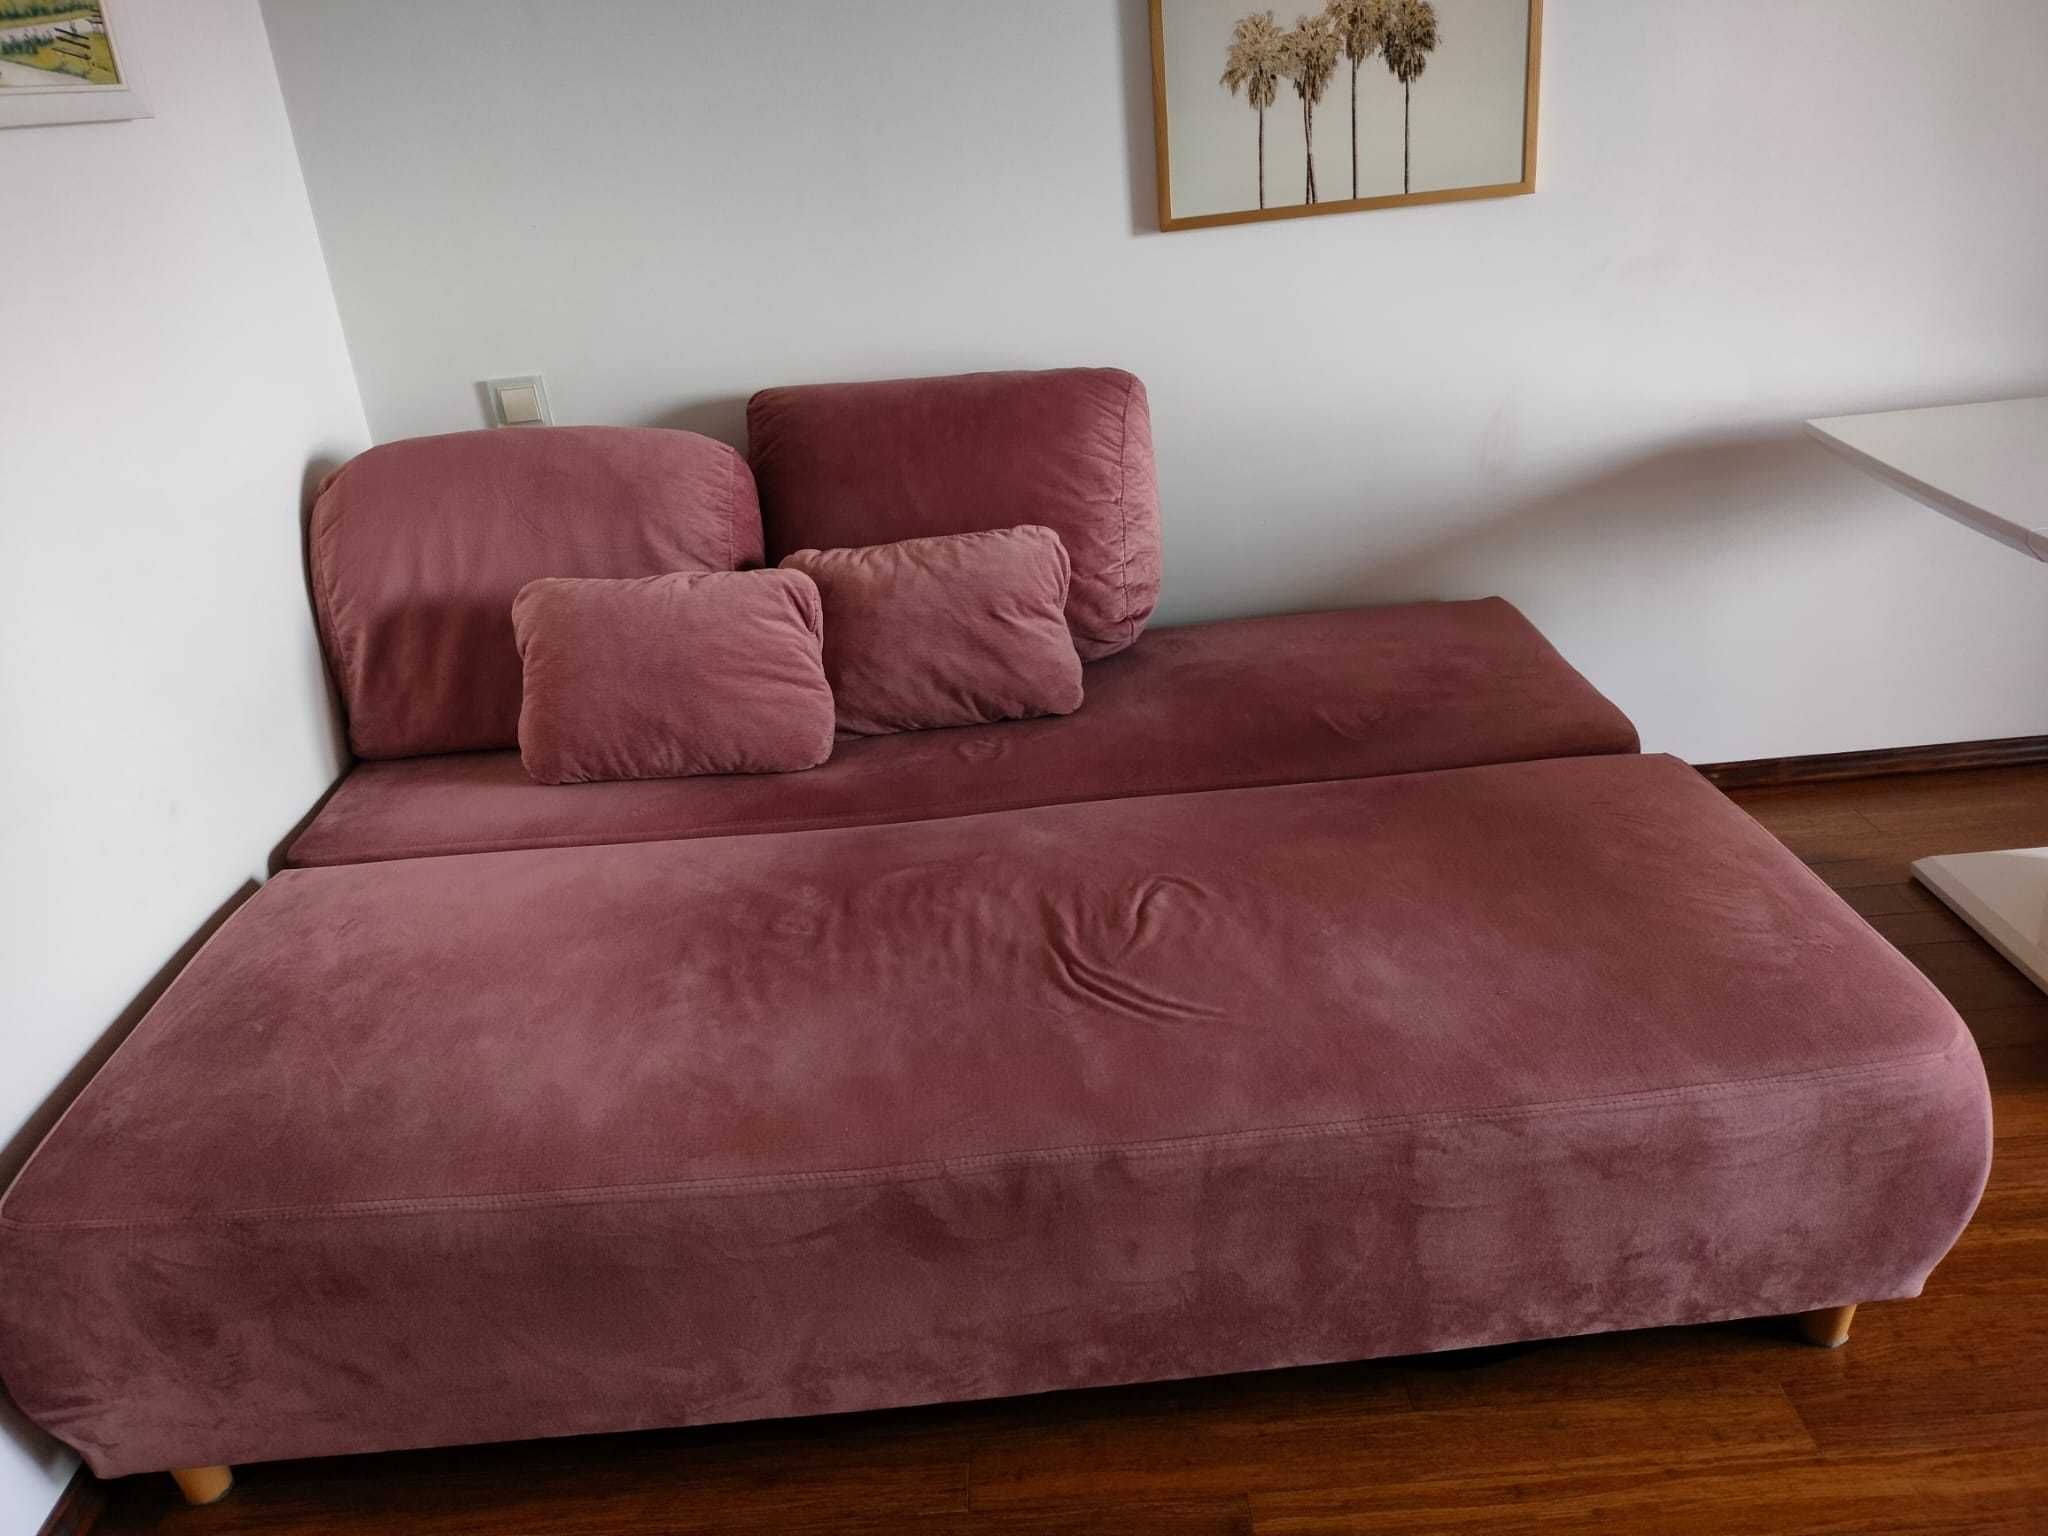 Sofa rozkładana jak wersalka